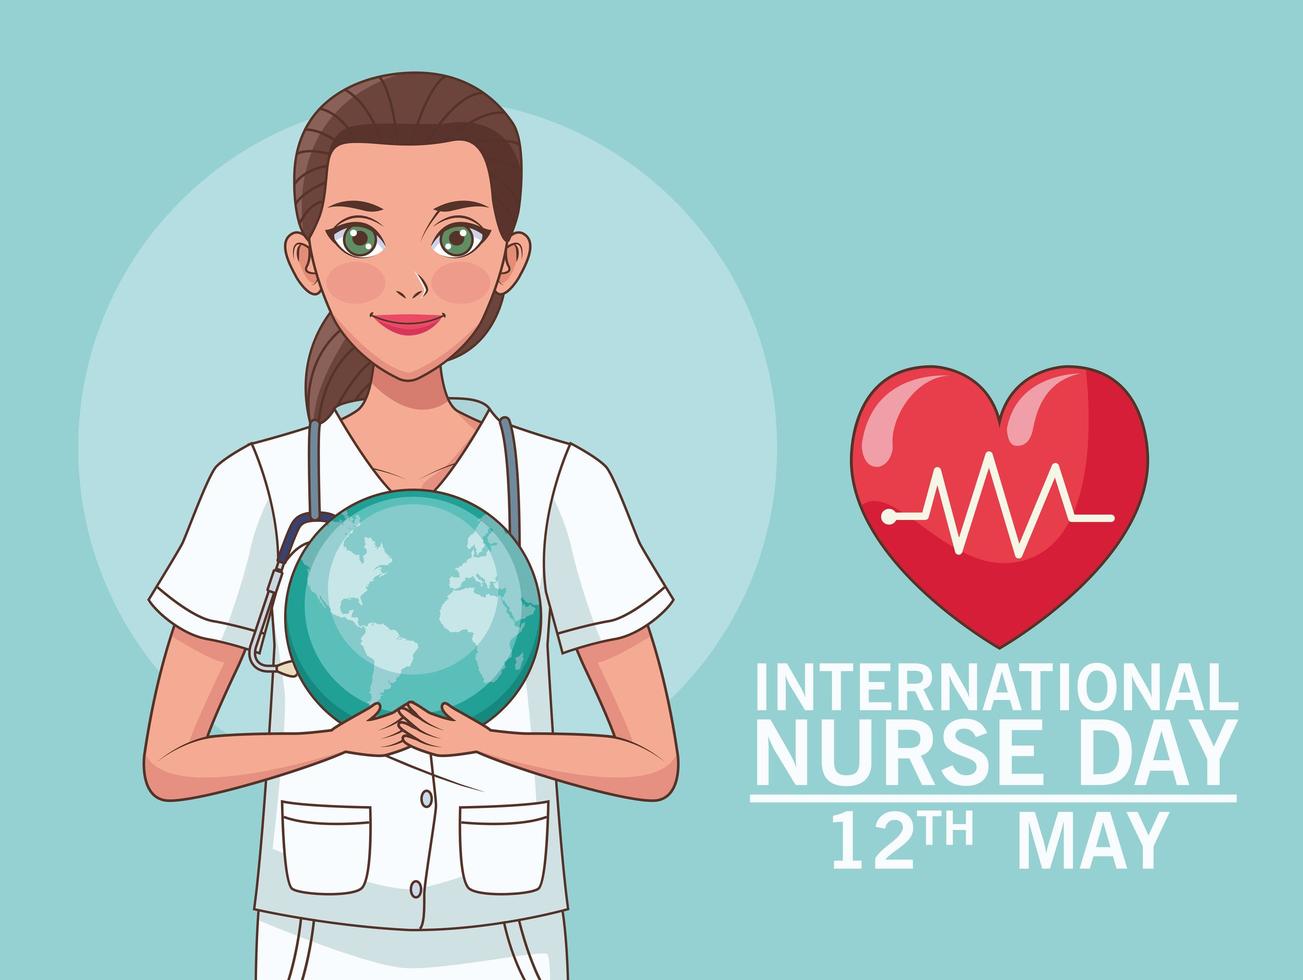 giornata internazionale dell'infermiera vettore